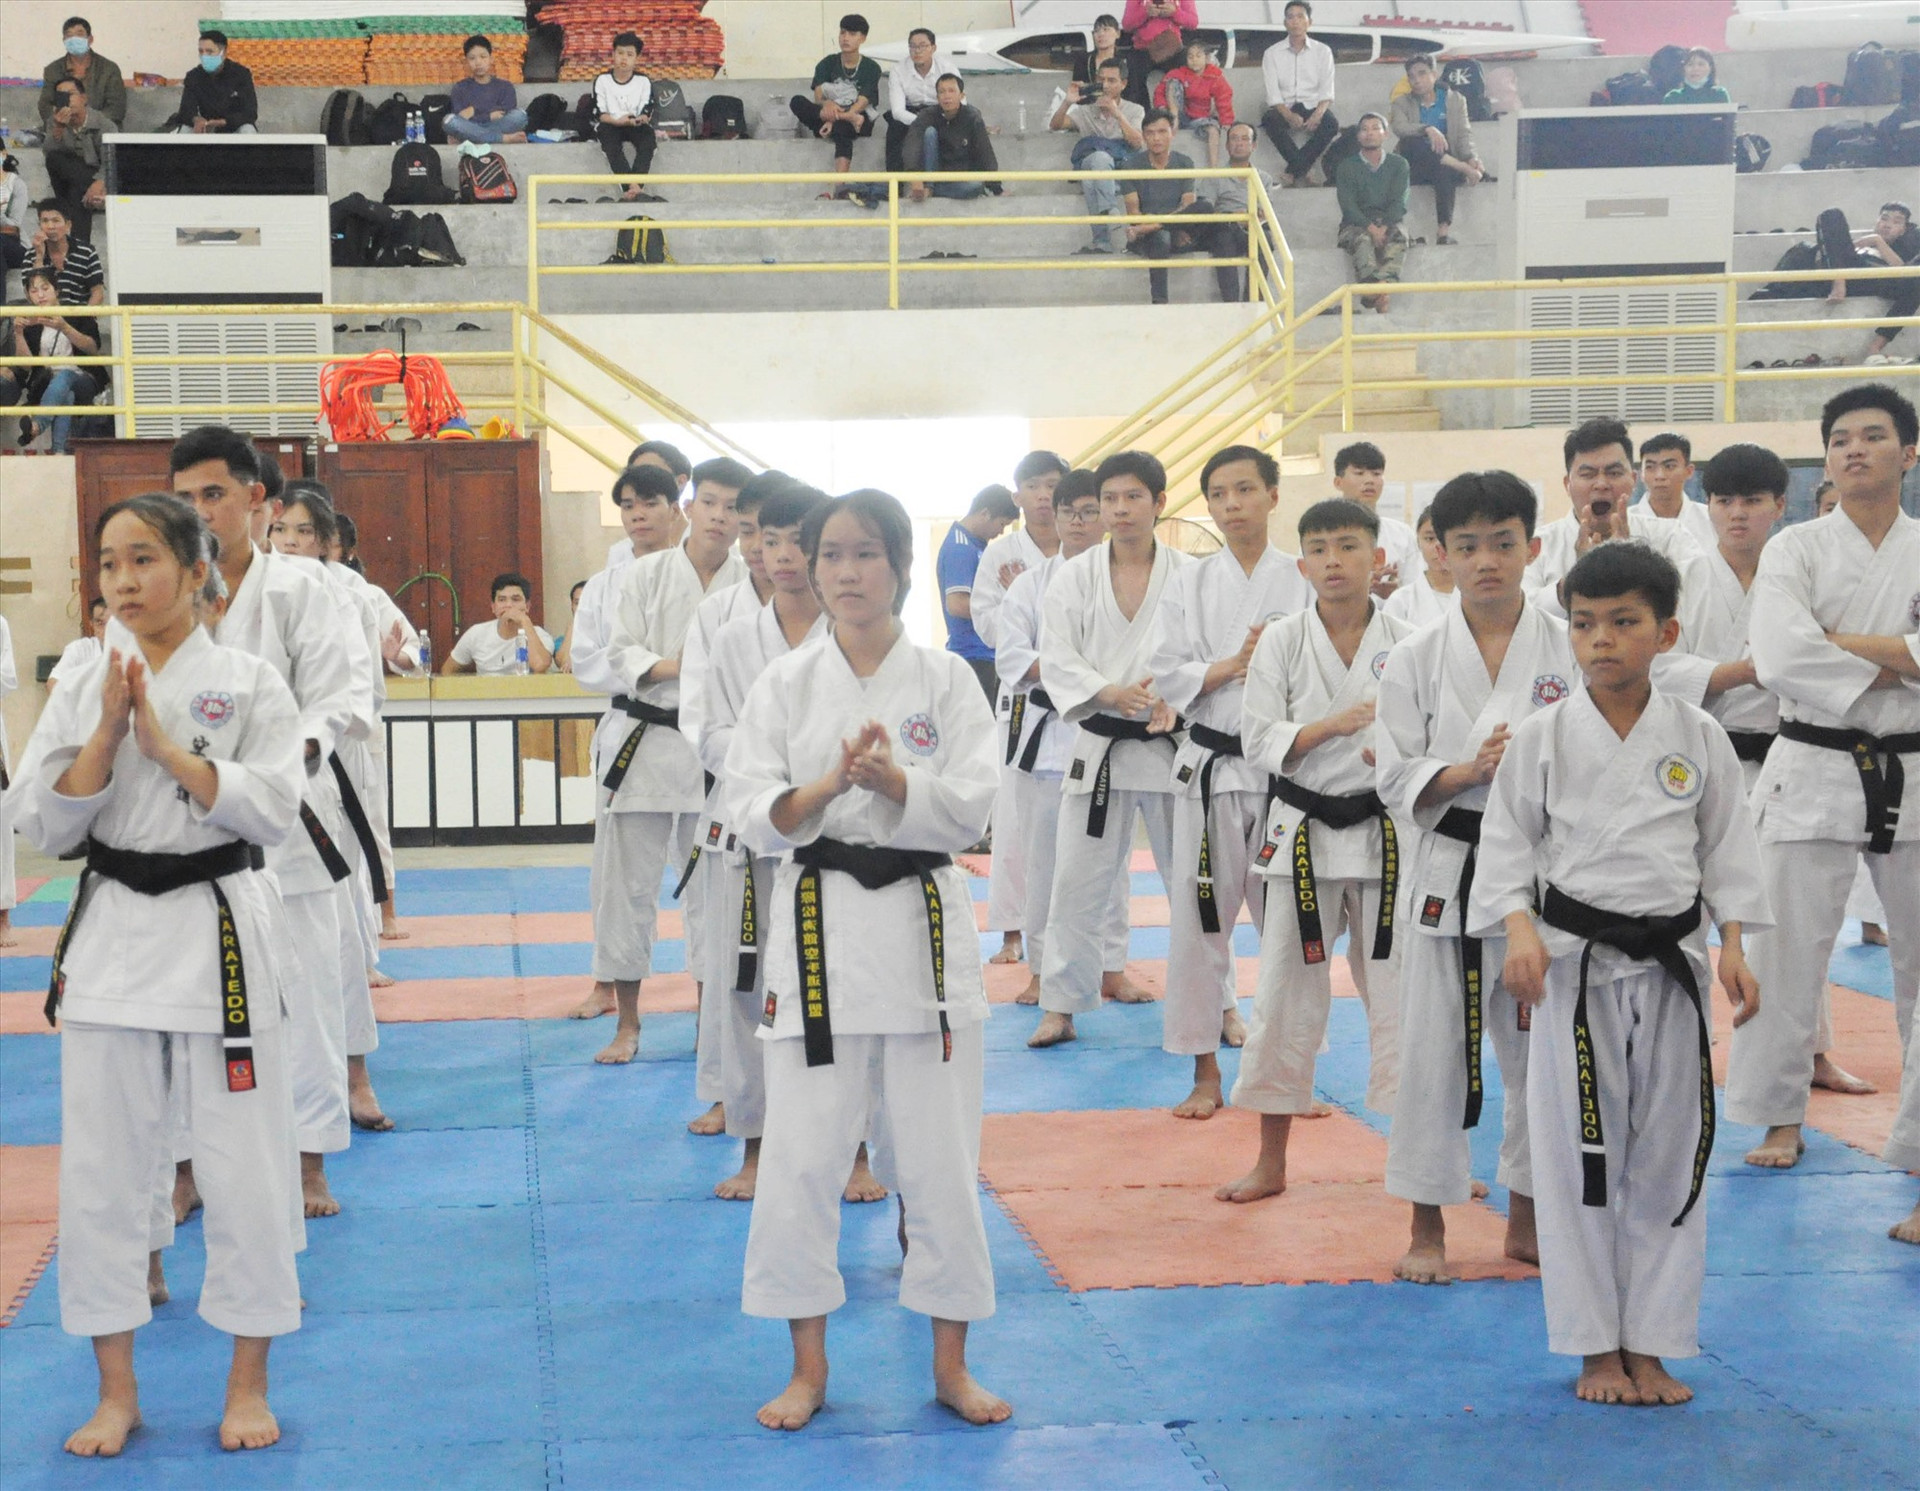 Phong trào tập luyện Karatedo ngày càng phát triển tại nhiều địa phương trên địa bàn tỉnh. Ảnh: A.SẮC